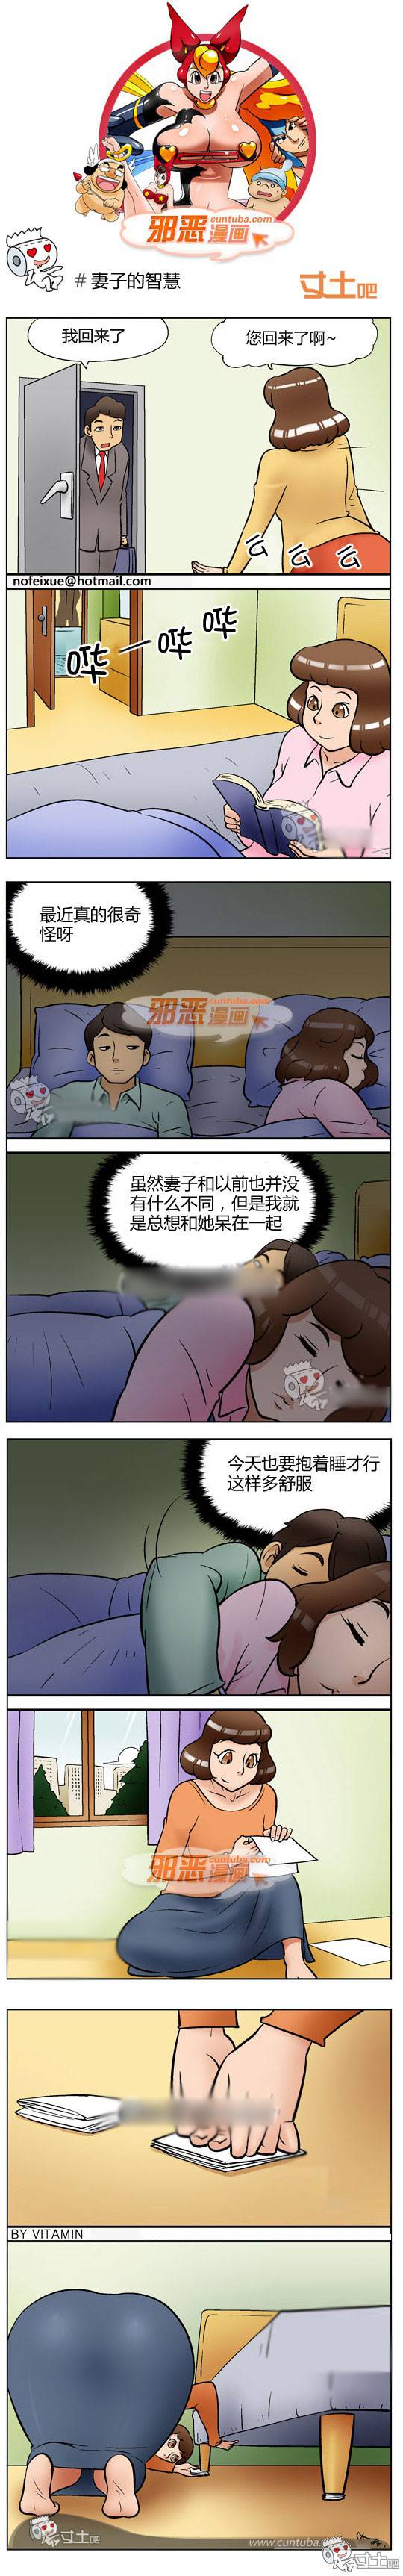 邪恶漫画爆笑囧图第254刊：真正的幸福生活